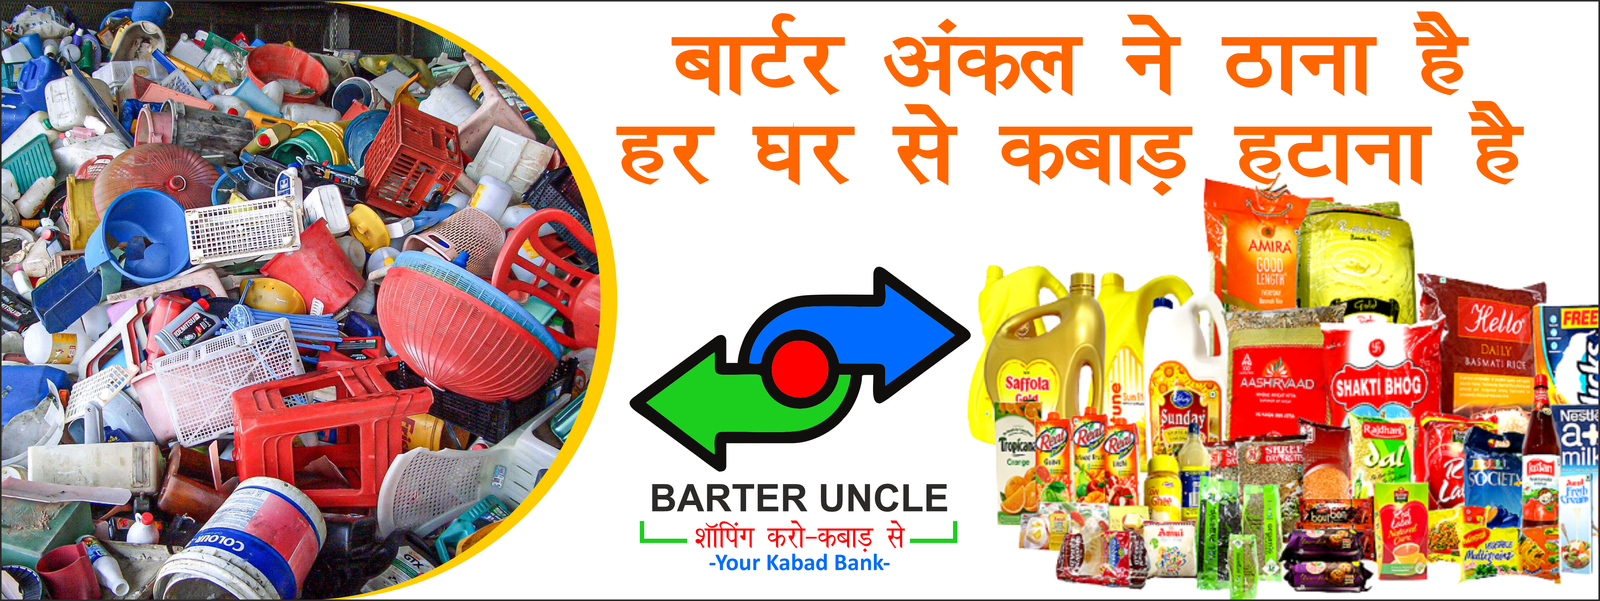 Barter Uncle Website Poster cdr 03